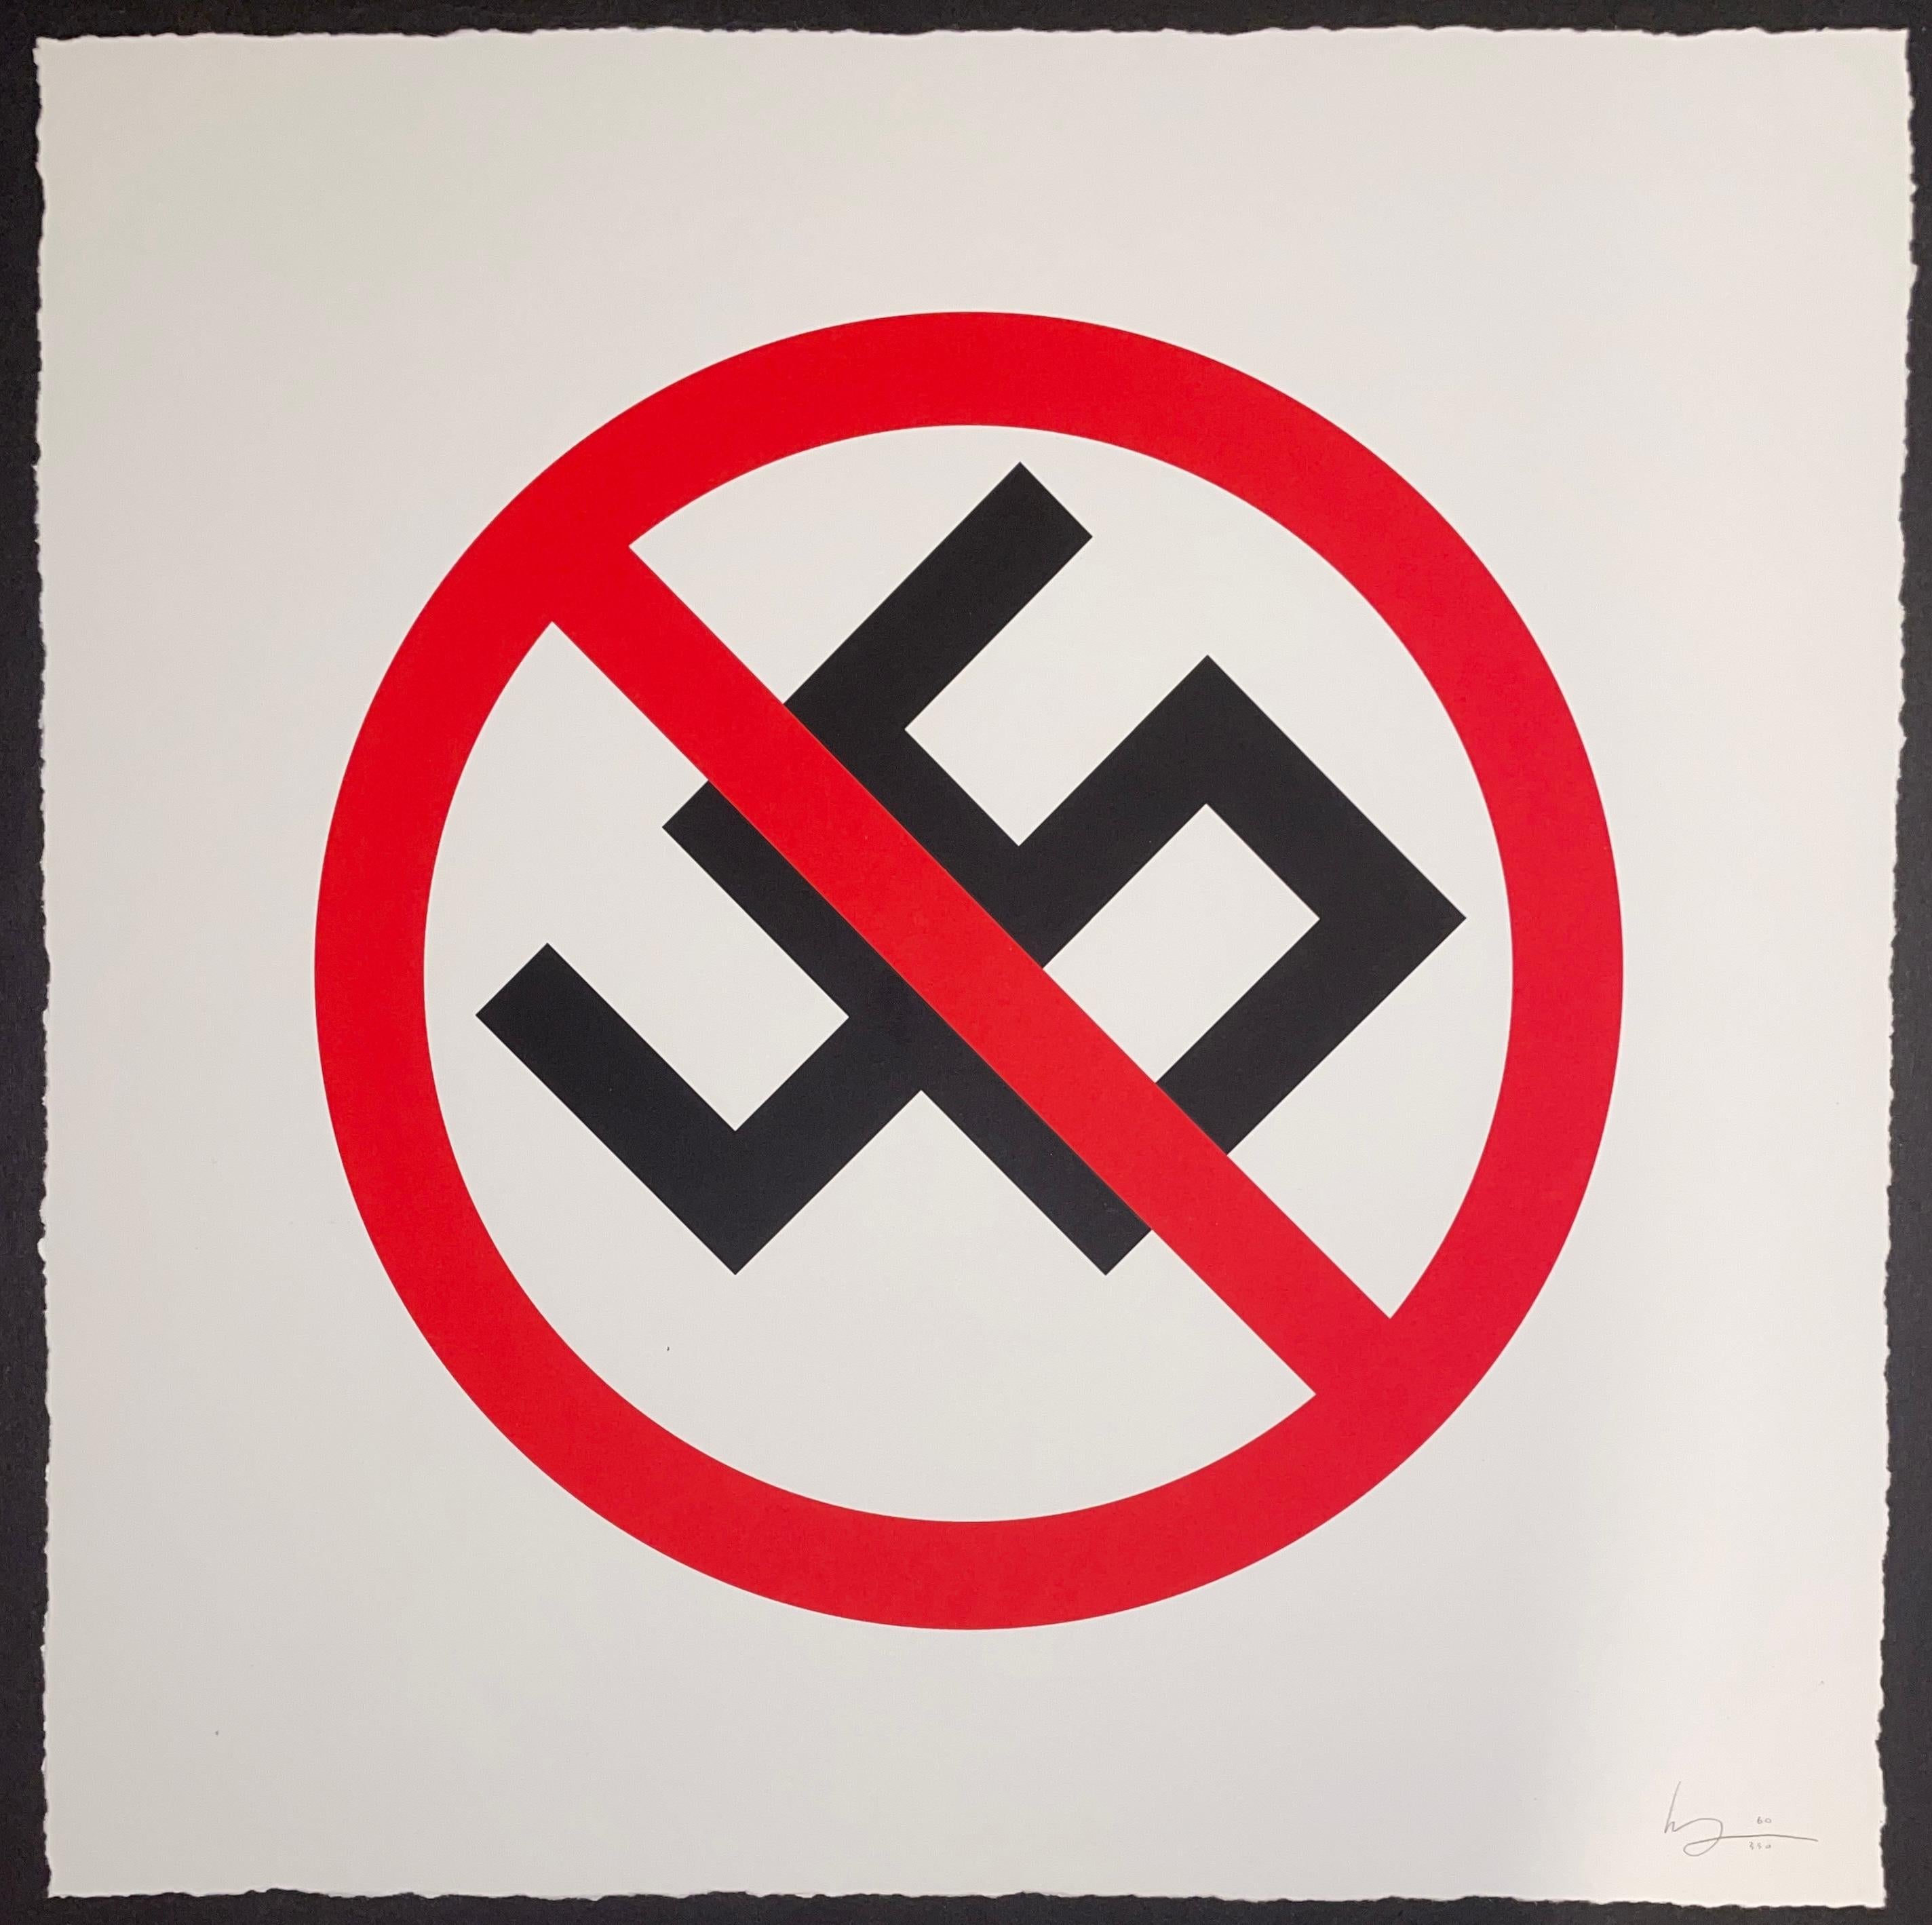 Mike Mitchell 45 Anti Donald Trump sérigraphie signée et numérotée End Racism Art 